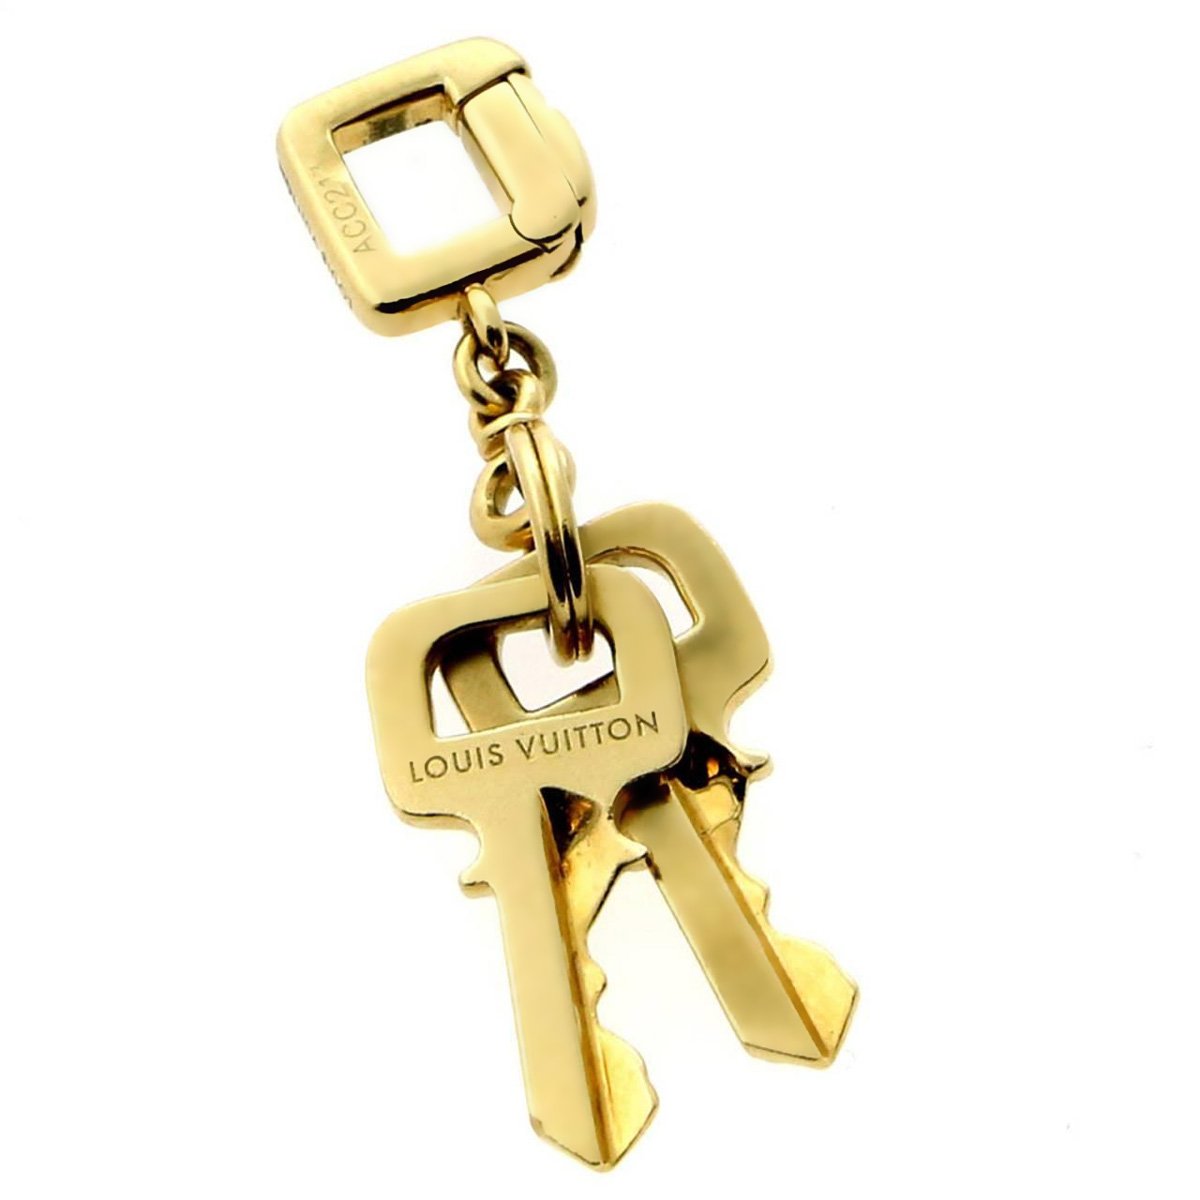 Louis Vuitton 18K Lock it Pendant Necklace - 18K Rose Gold Pendant